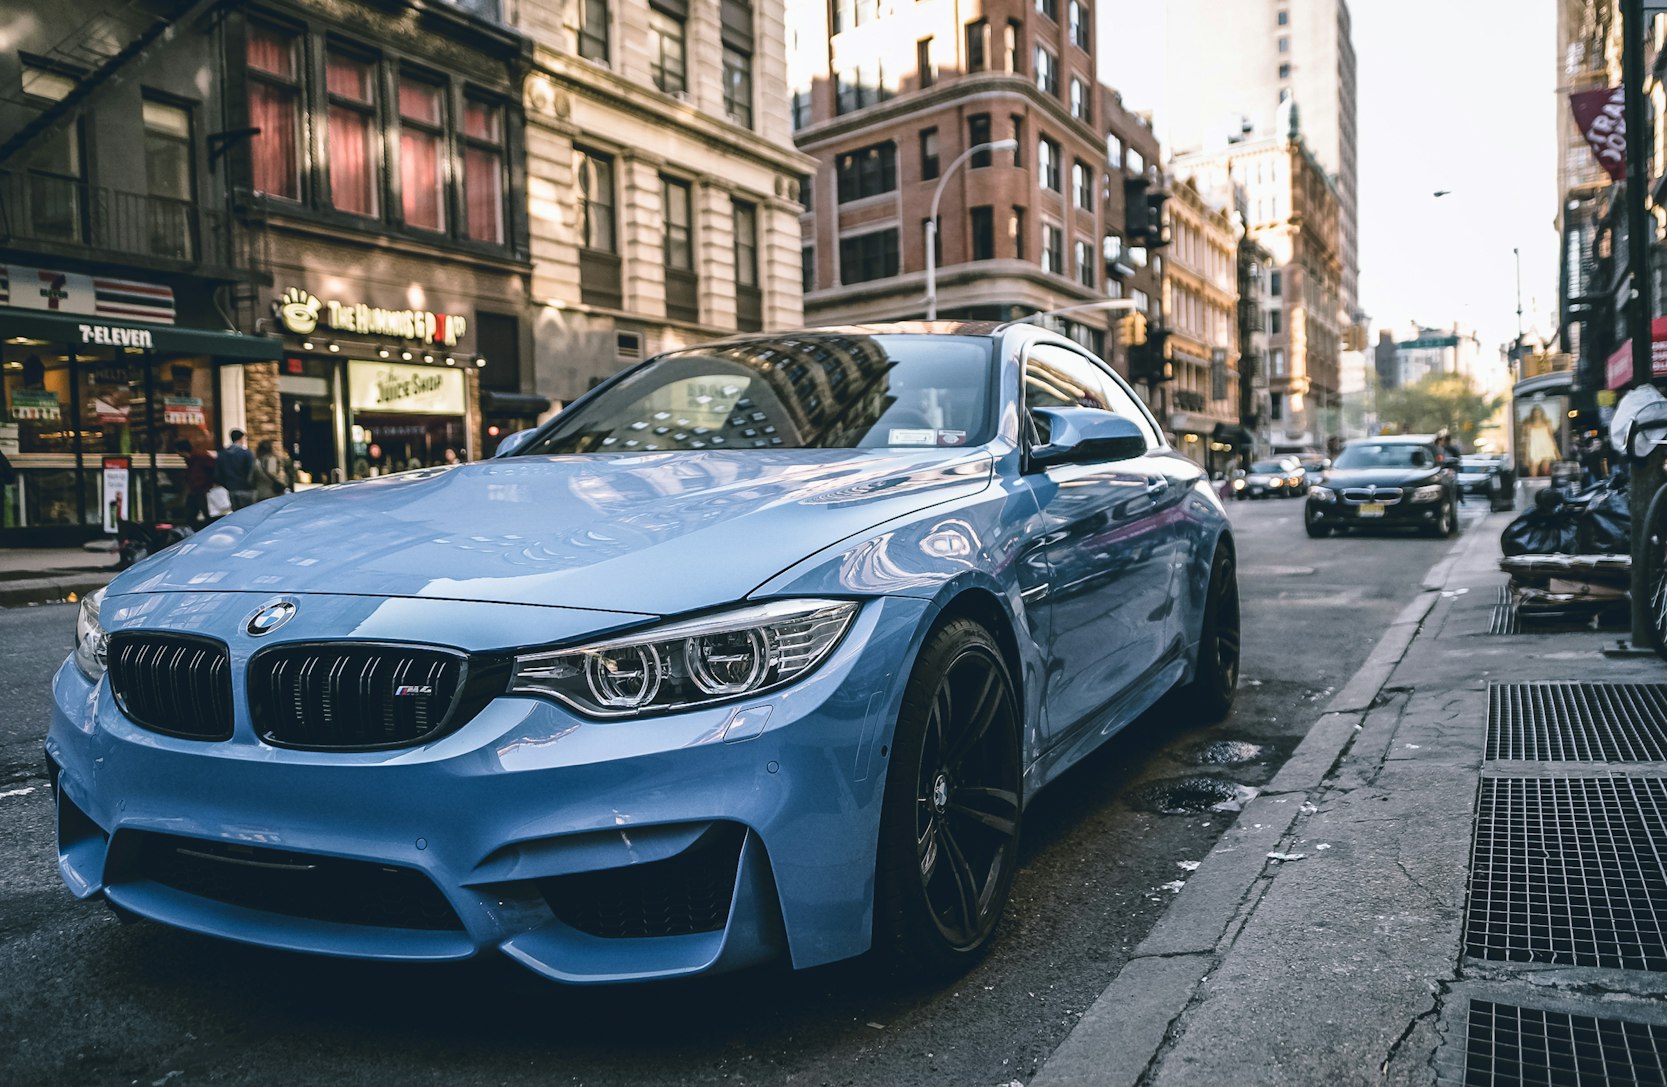 Blue BMW on a street